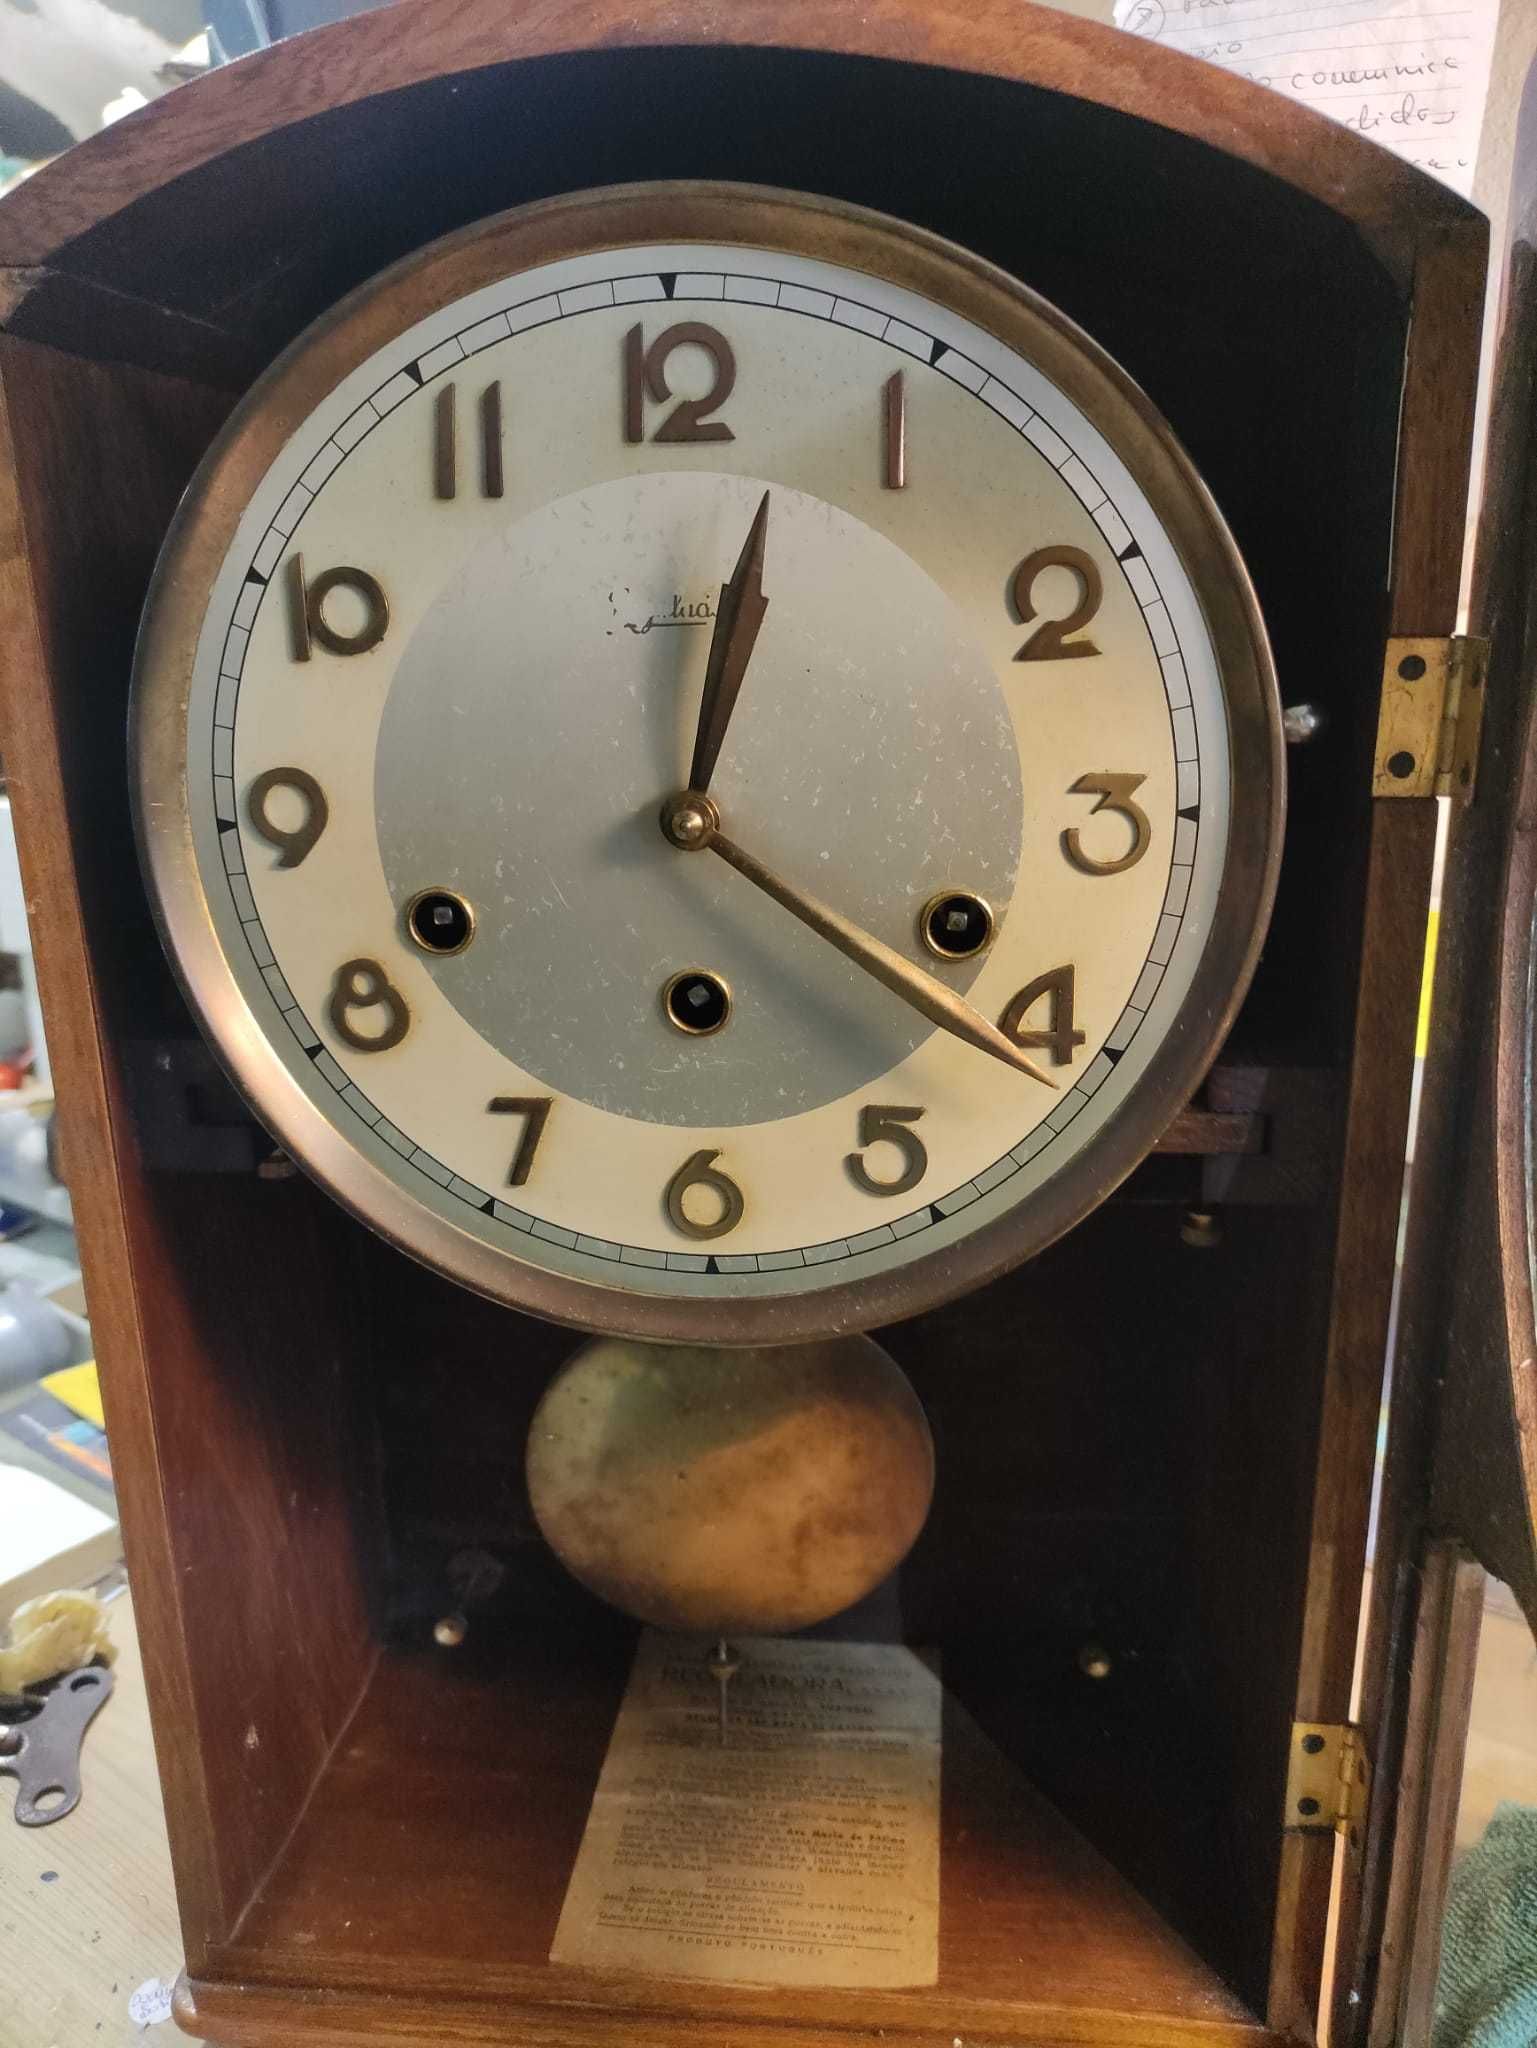 Relógio Antigo Funcional com todas as Peças